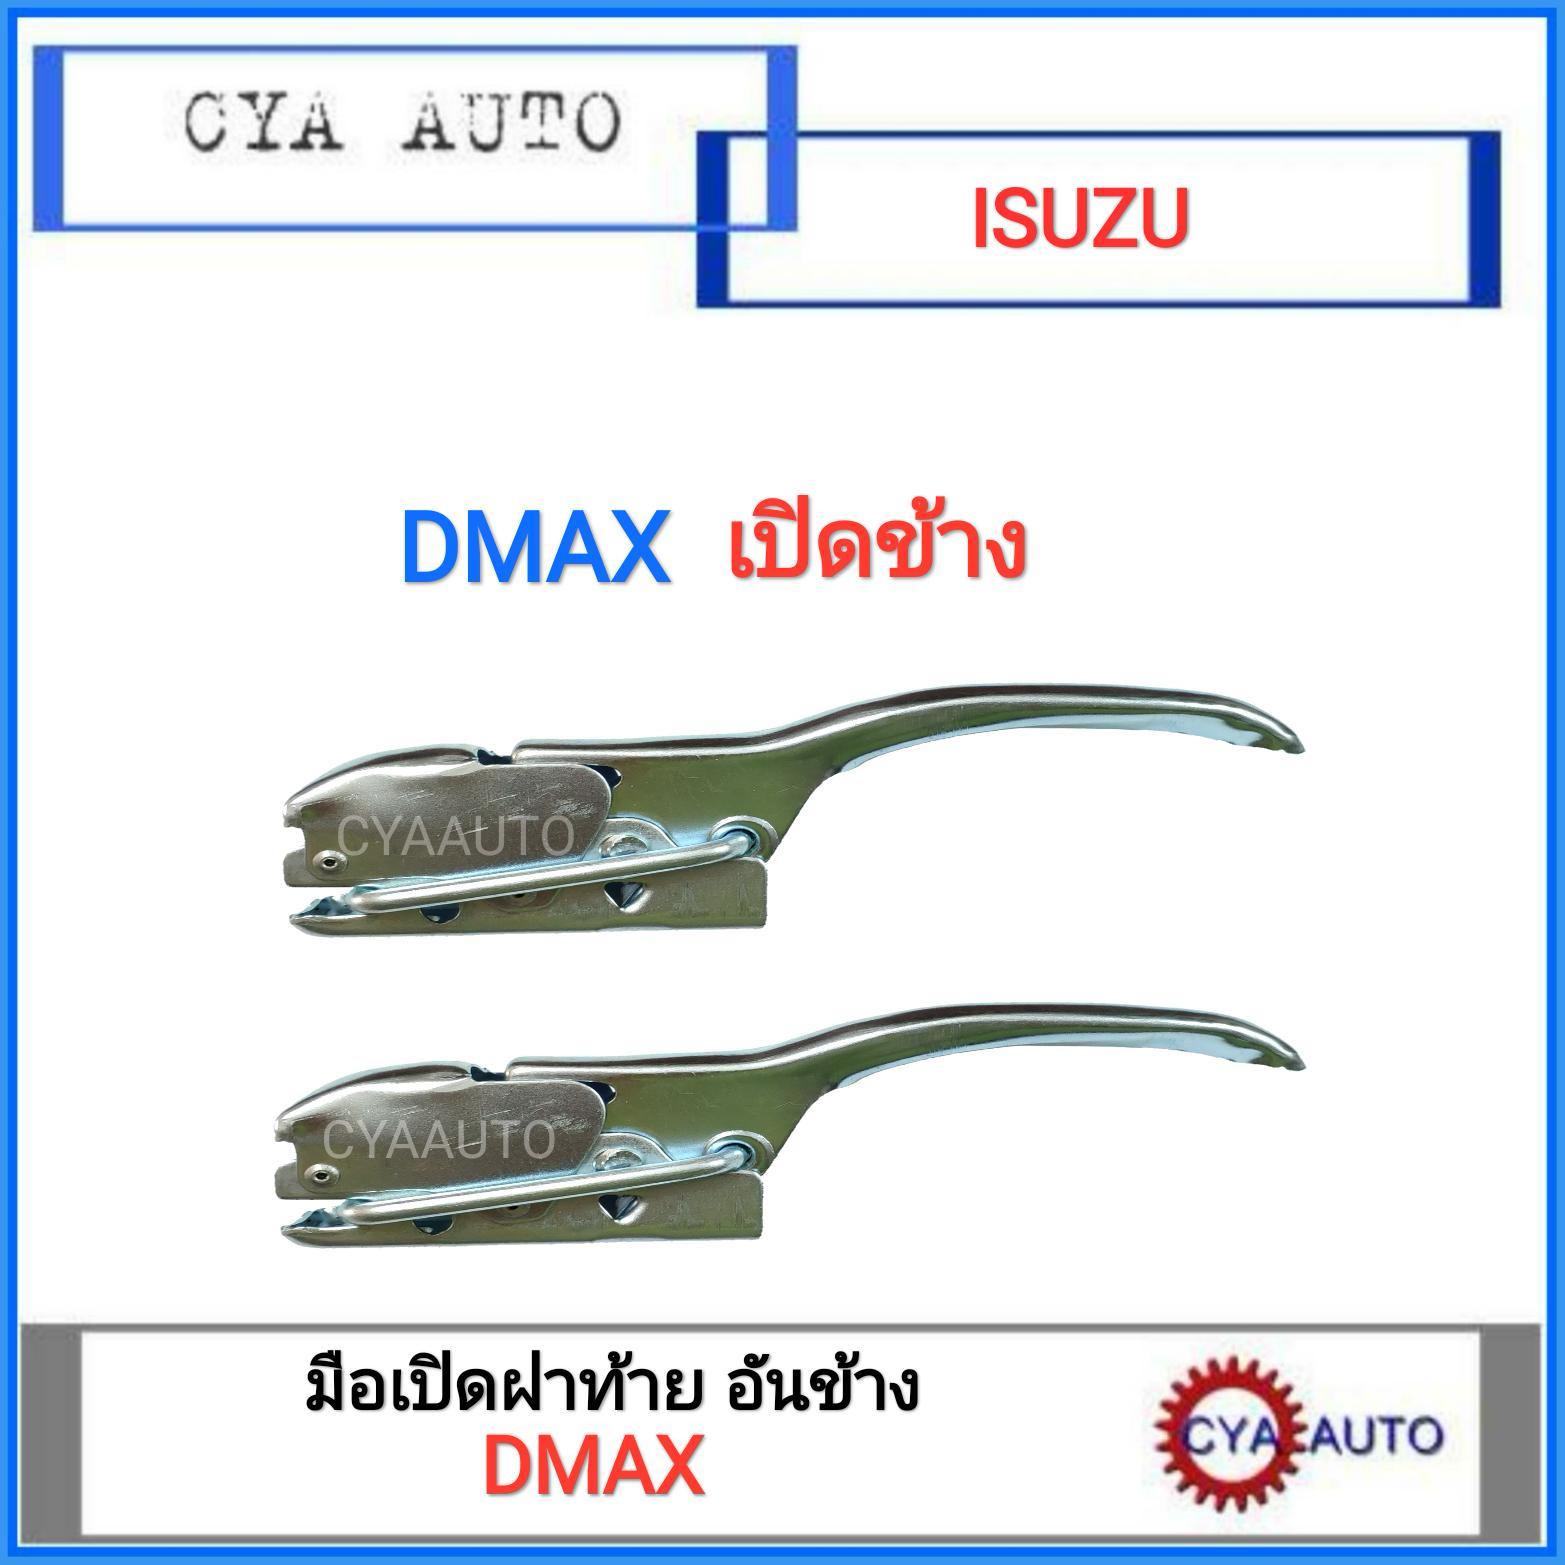 มือเปิดฝาท้าย เปิดกะบะท้าย (อันข้าง) ISUZU DMAX ดีแม็กซ์ (2อัน)